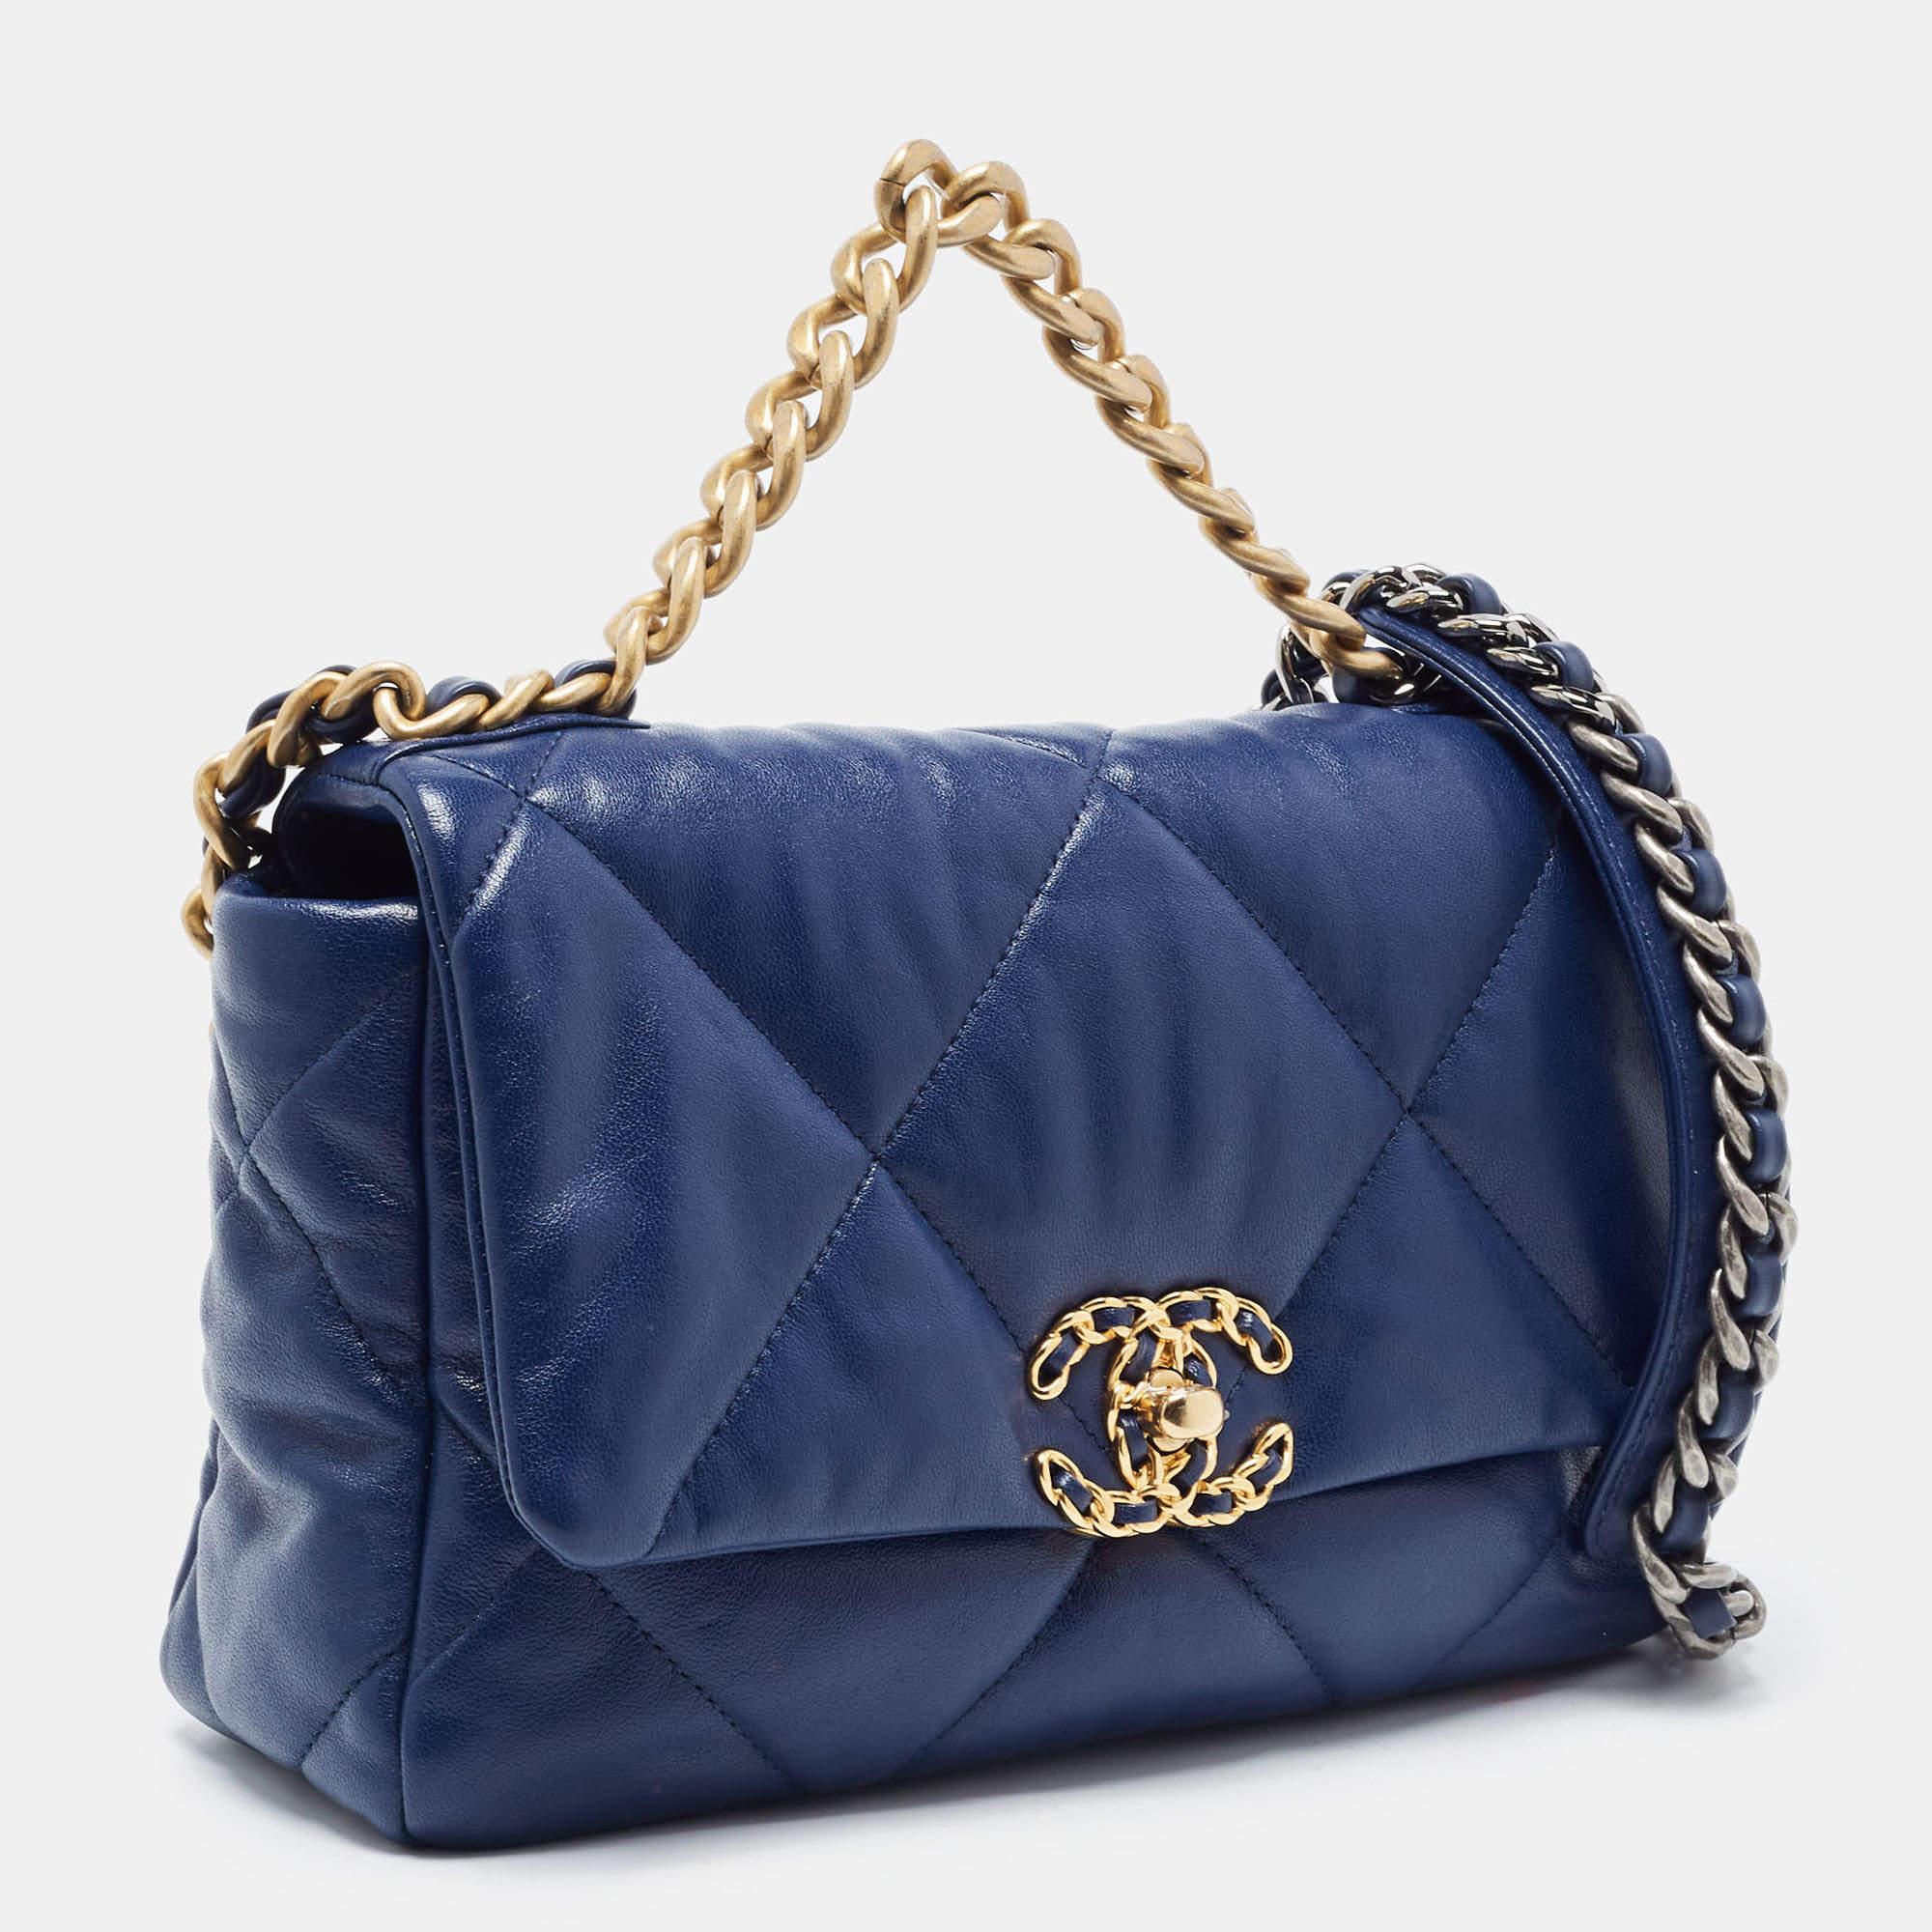 Parfait pour ranger vos essentiels en un seul endroit, cet authentique sac à rabat Chanel 19 est un investissement digne de ce nom. Il présente des détails remarquables et offre un aspect de luxe.

